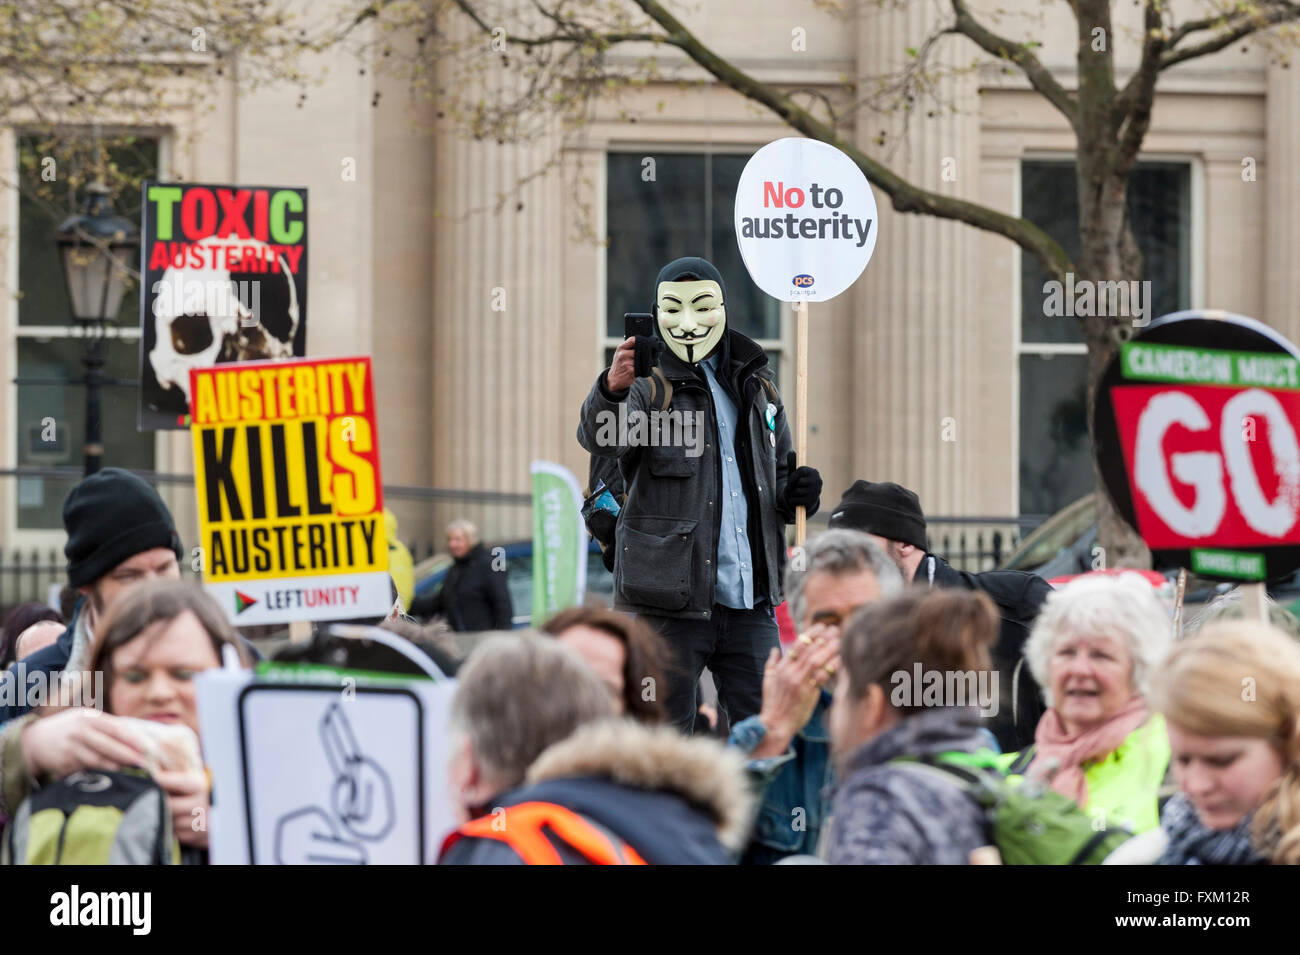 Londres, Royaume-Uni. 16 avril 2016. Les manifestants mars sur Trafalgar Square au cours de la Marche pour la santé, l'habitat, de travail et de l'éducation, organisé par l'Assemblée du peuple. Des milliers ont écouté des conférenciers et des syndicalistes qui ont parlé de l'austérité, l'enregistrement de la NHS et une fin de règne conservateur. Crédit : Stephen Chung / Alamy Live News Banque D'Images